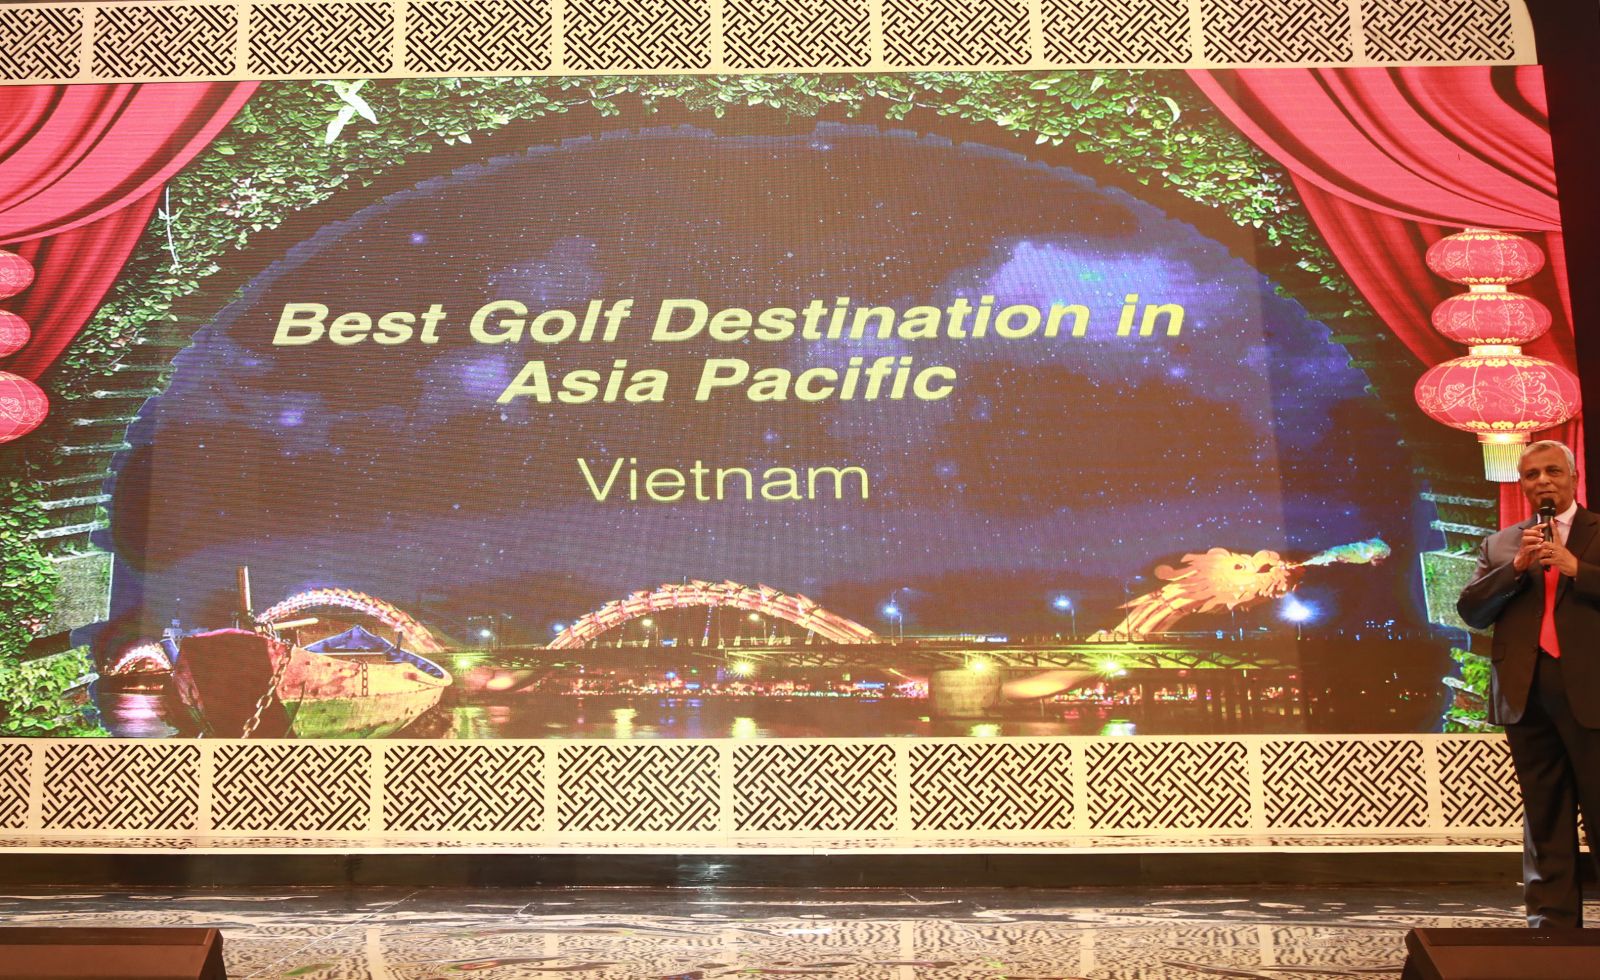 Ông Mike Sebastian - Giám đốc điều hành Tập đoàn golf Châu Á Thái Bình Dương công bố Việt Nam trở thành Điểm đến golf tốt nhất Châu Á Thái Bình Dương (Best golf Destination in Asia Pacific) tại Hội nghị golf Châu Á Thái Bình Dương 2017 Điểm sáng Thái Lan.